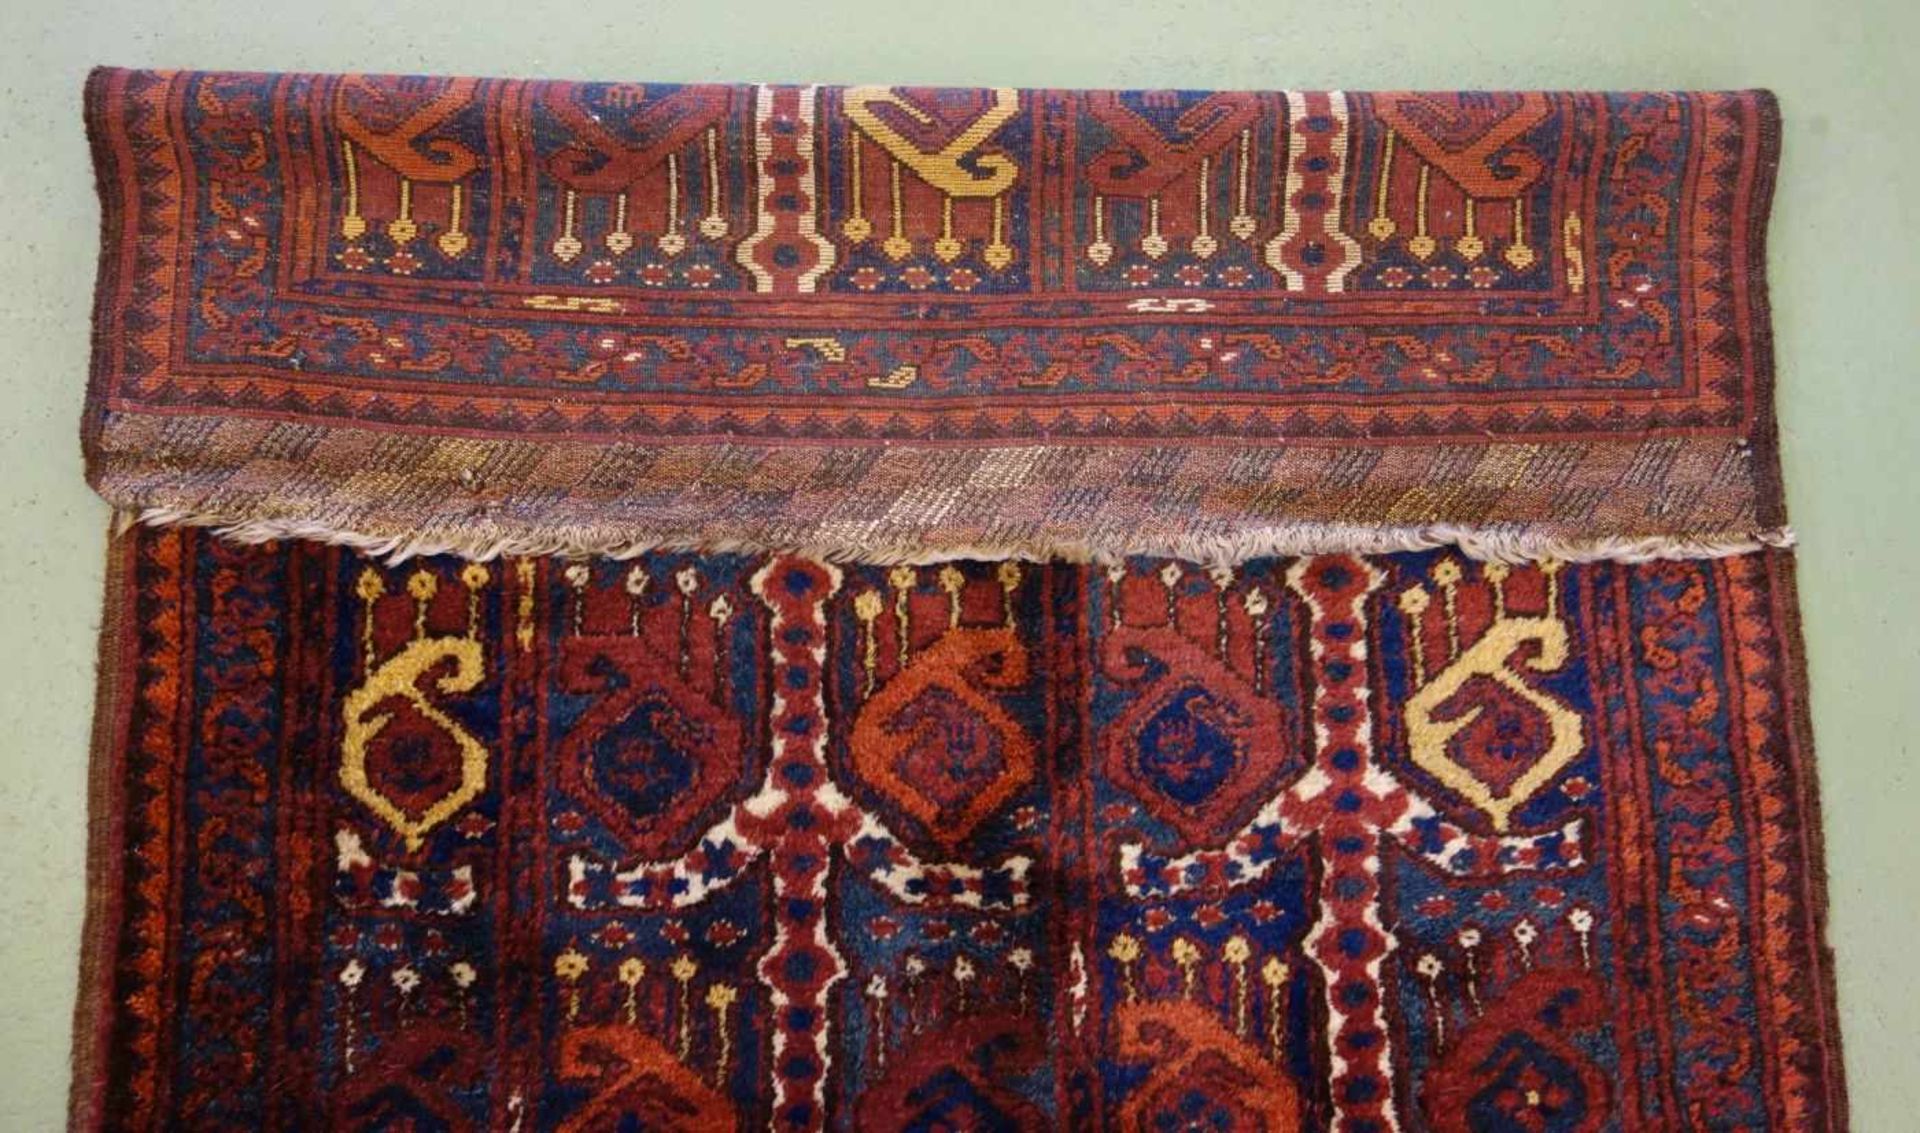 BESCHIR (ERSARI BESCHIR) / KLEINER TEPPICH / carpet / Zentralasien oder Südturkestan, wahrscheinlich - Image 15 of 15